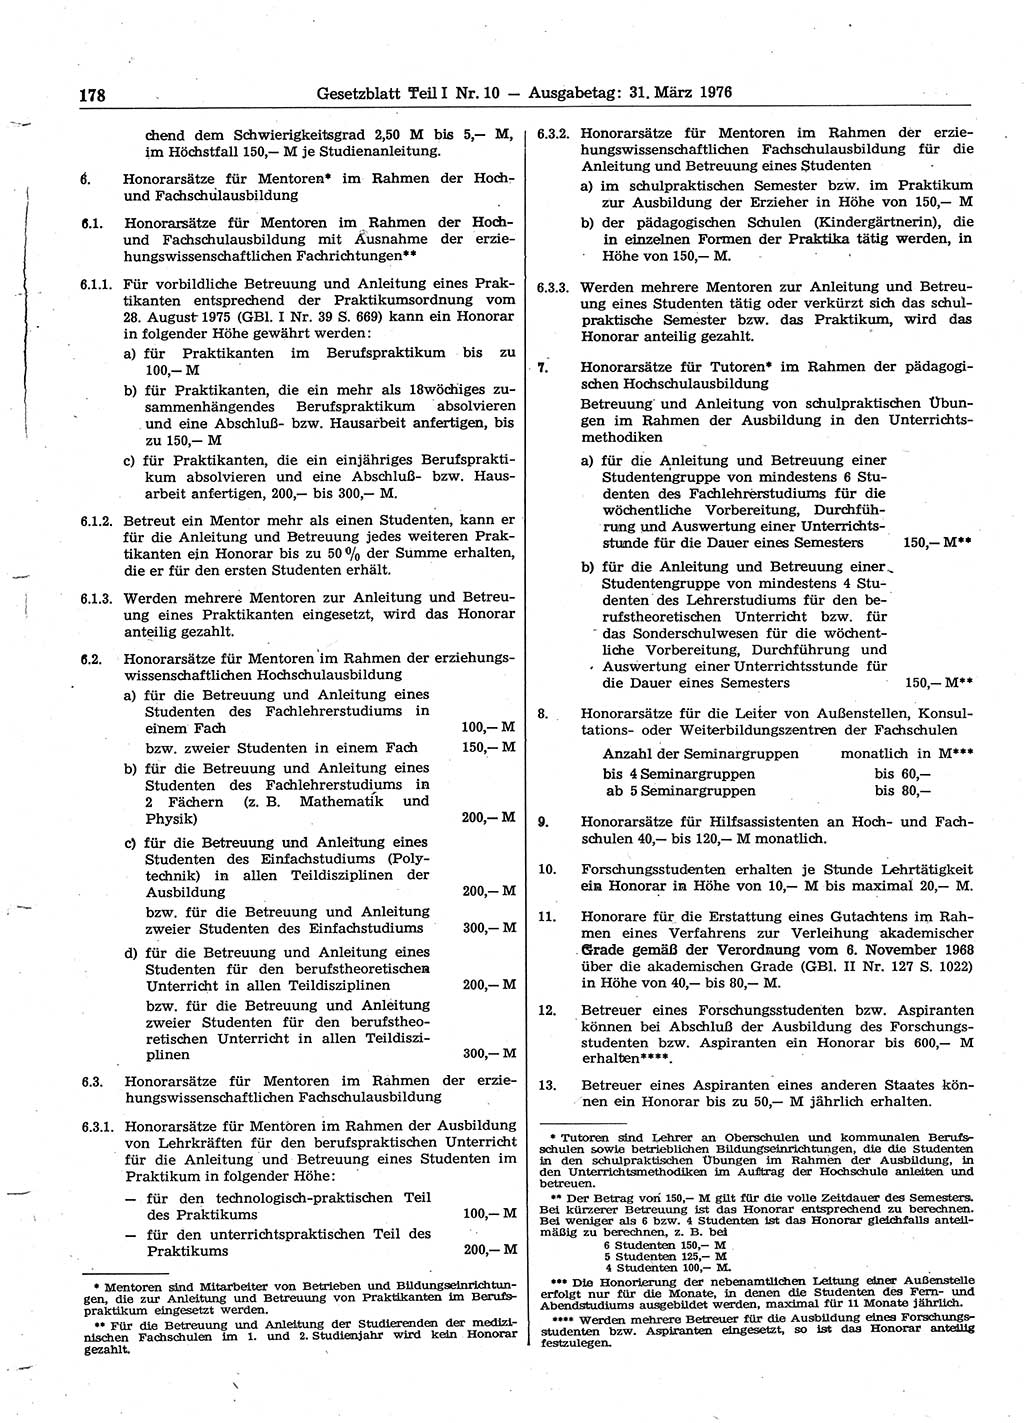 Gesetzblatt (GBl.) der Deutschen Demokratischen Republik (DDR) Teil Ⅰ 1976, Seite 178 (GBl. DDR Ⅰ 1976, S. 178)